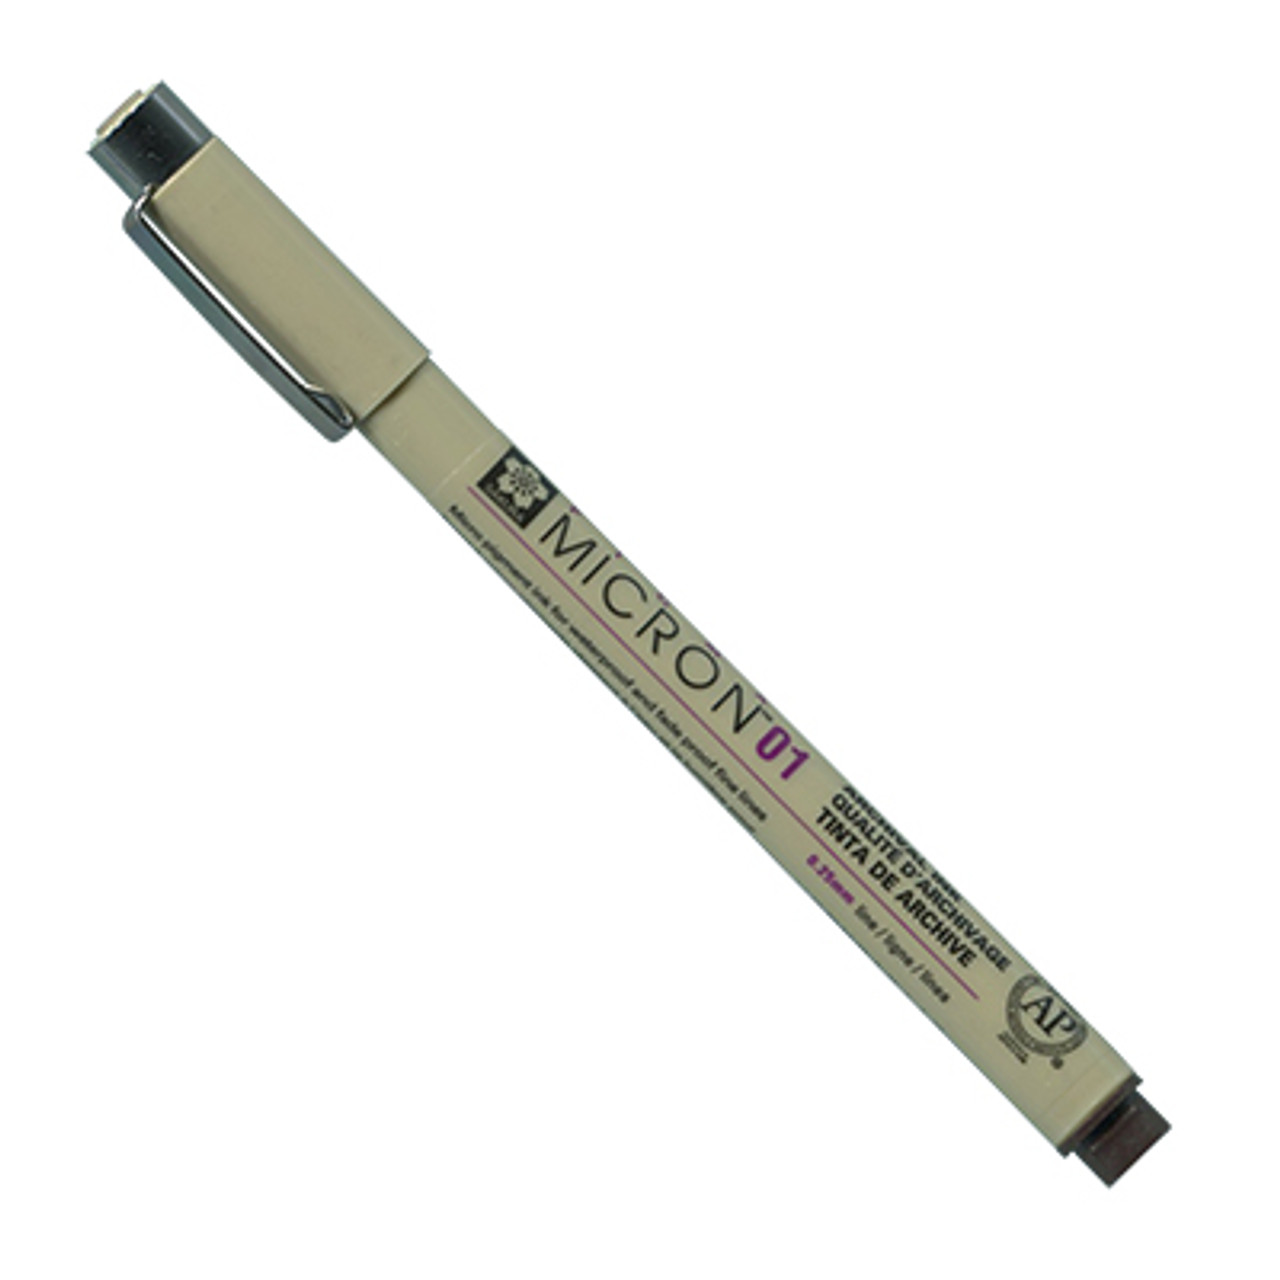 Sakura Pigma Micron 05 Pen 0.45mm Sepia